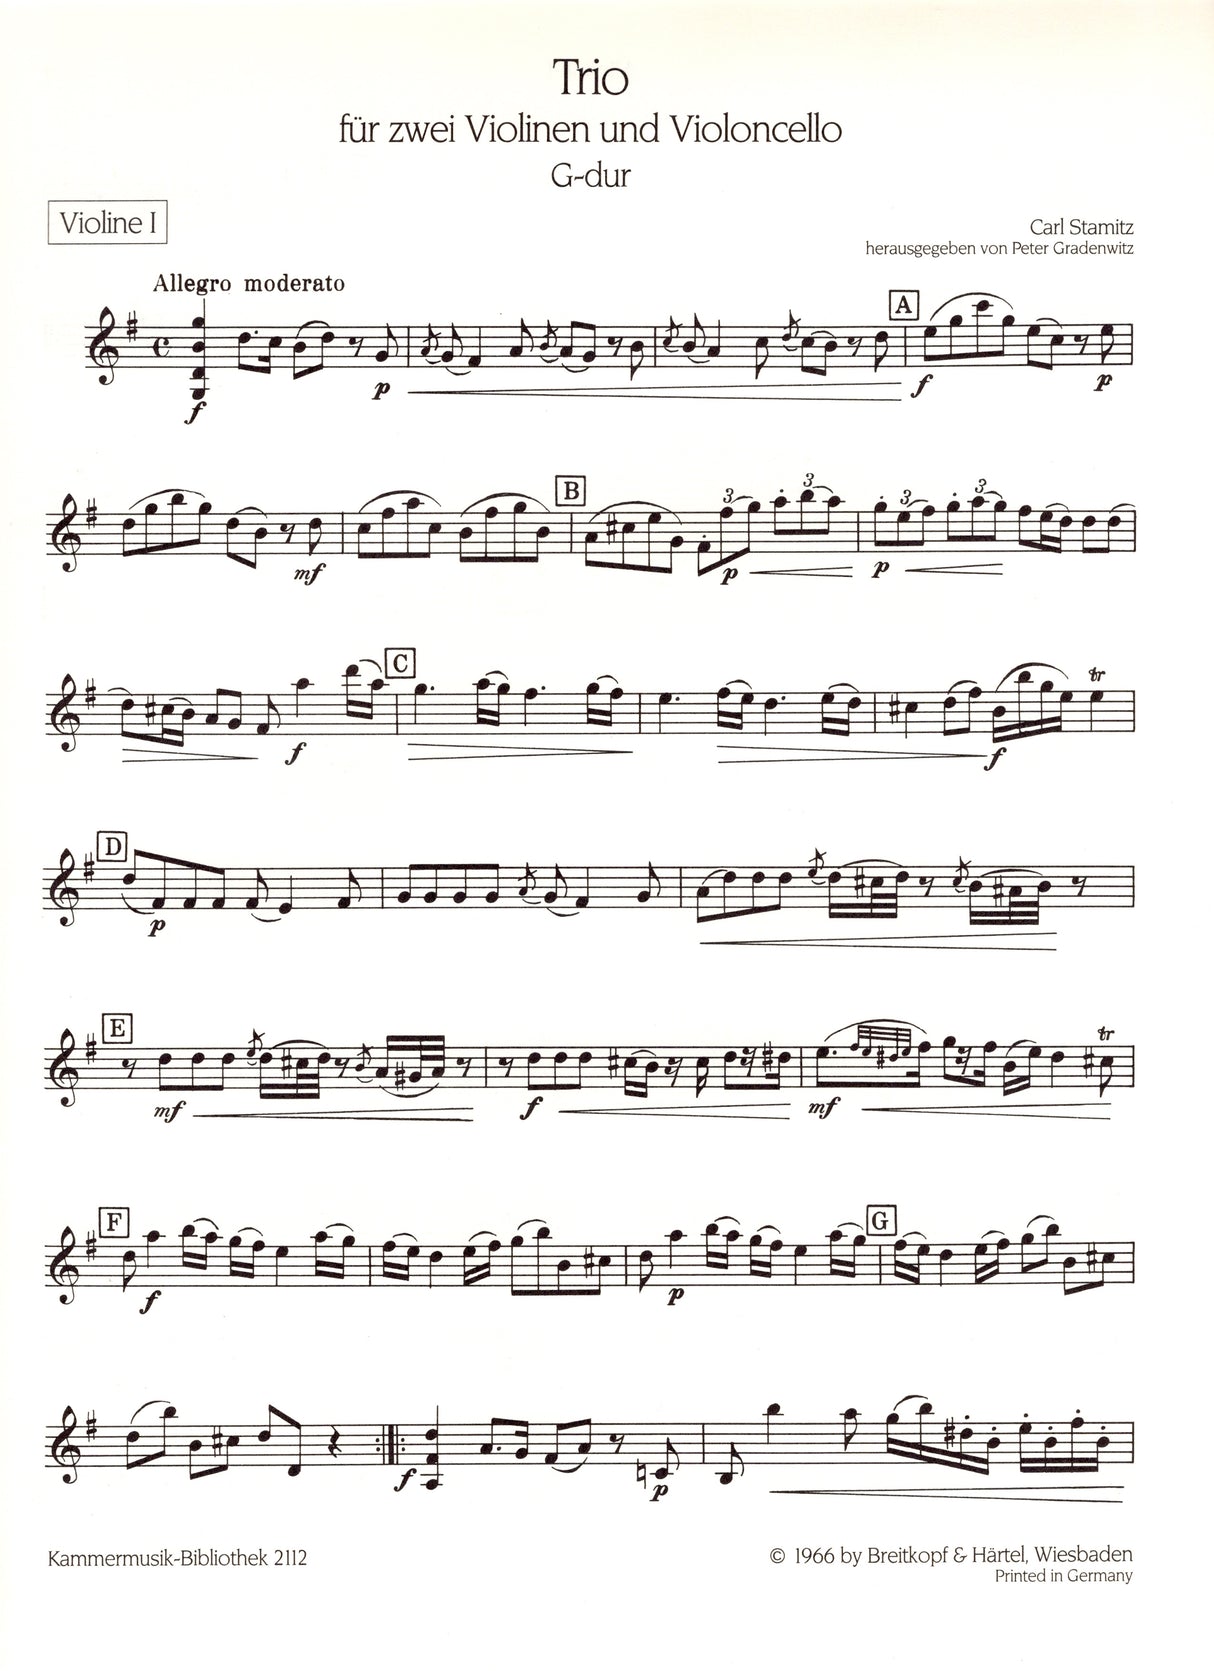 Stamitz: Trio Sonata in G Major